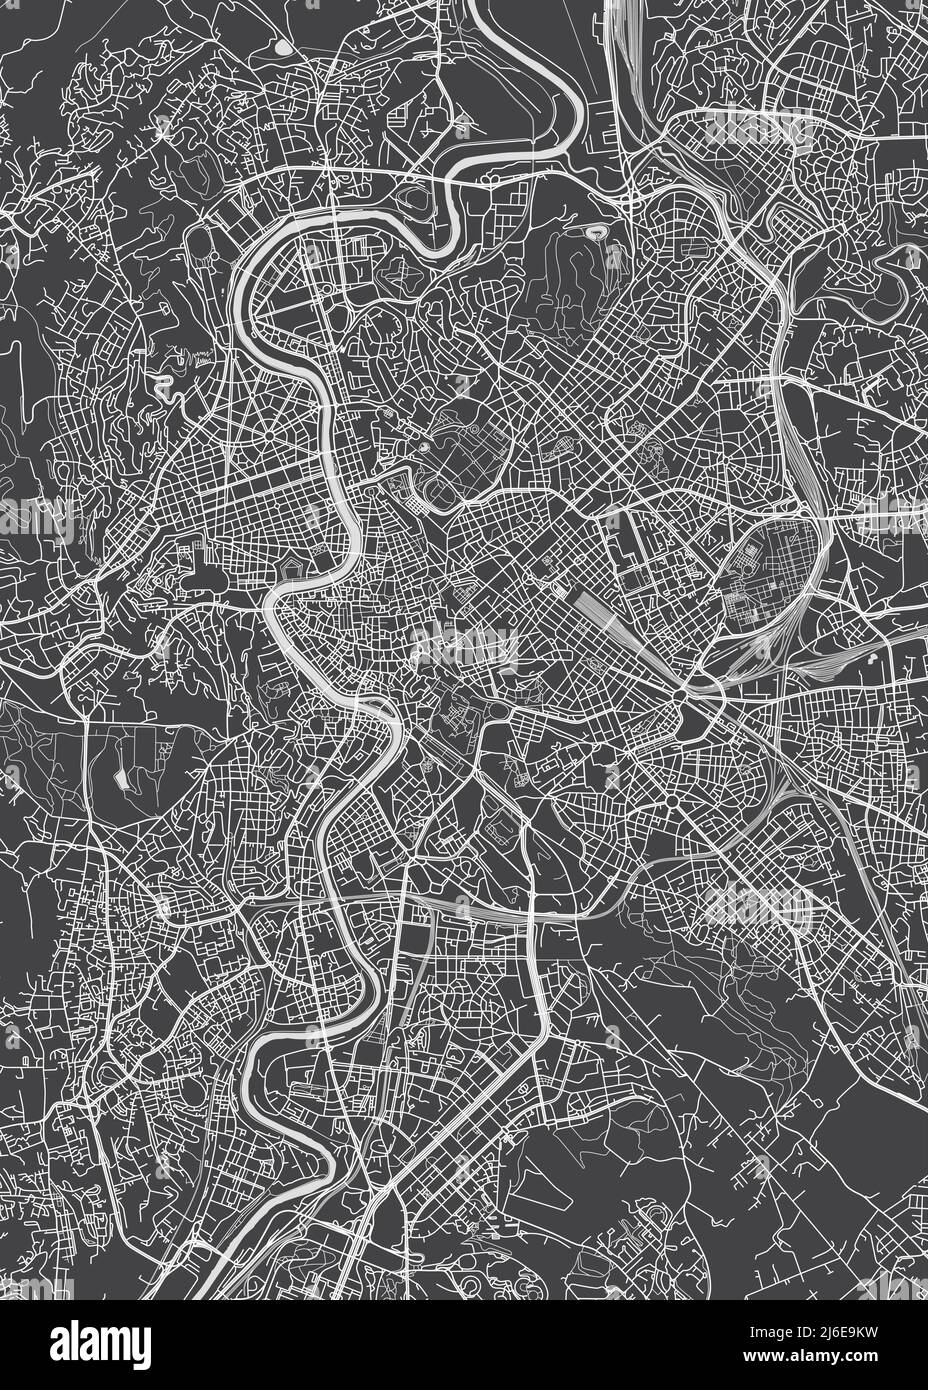 Stadtplan Rom, monochromer Detailplan, Vektorgrafik Stock Vektor